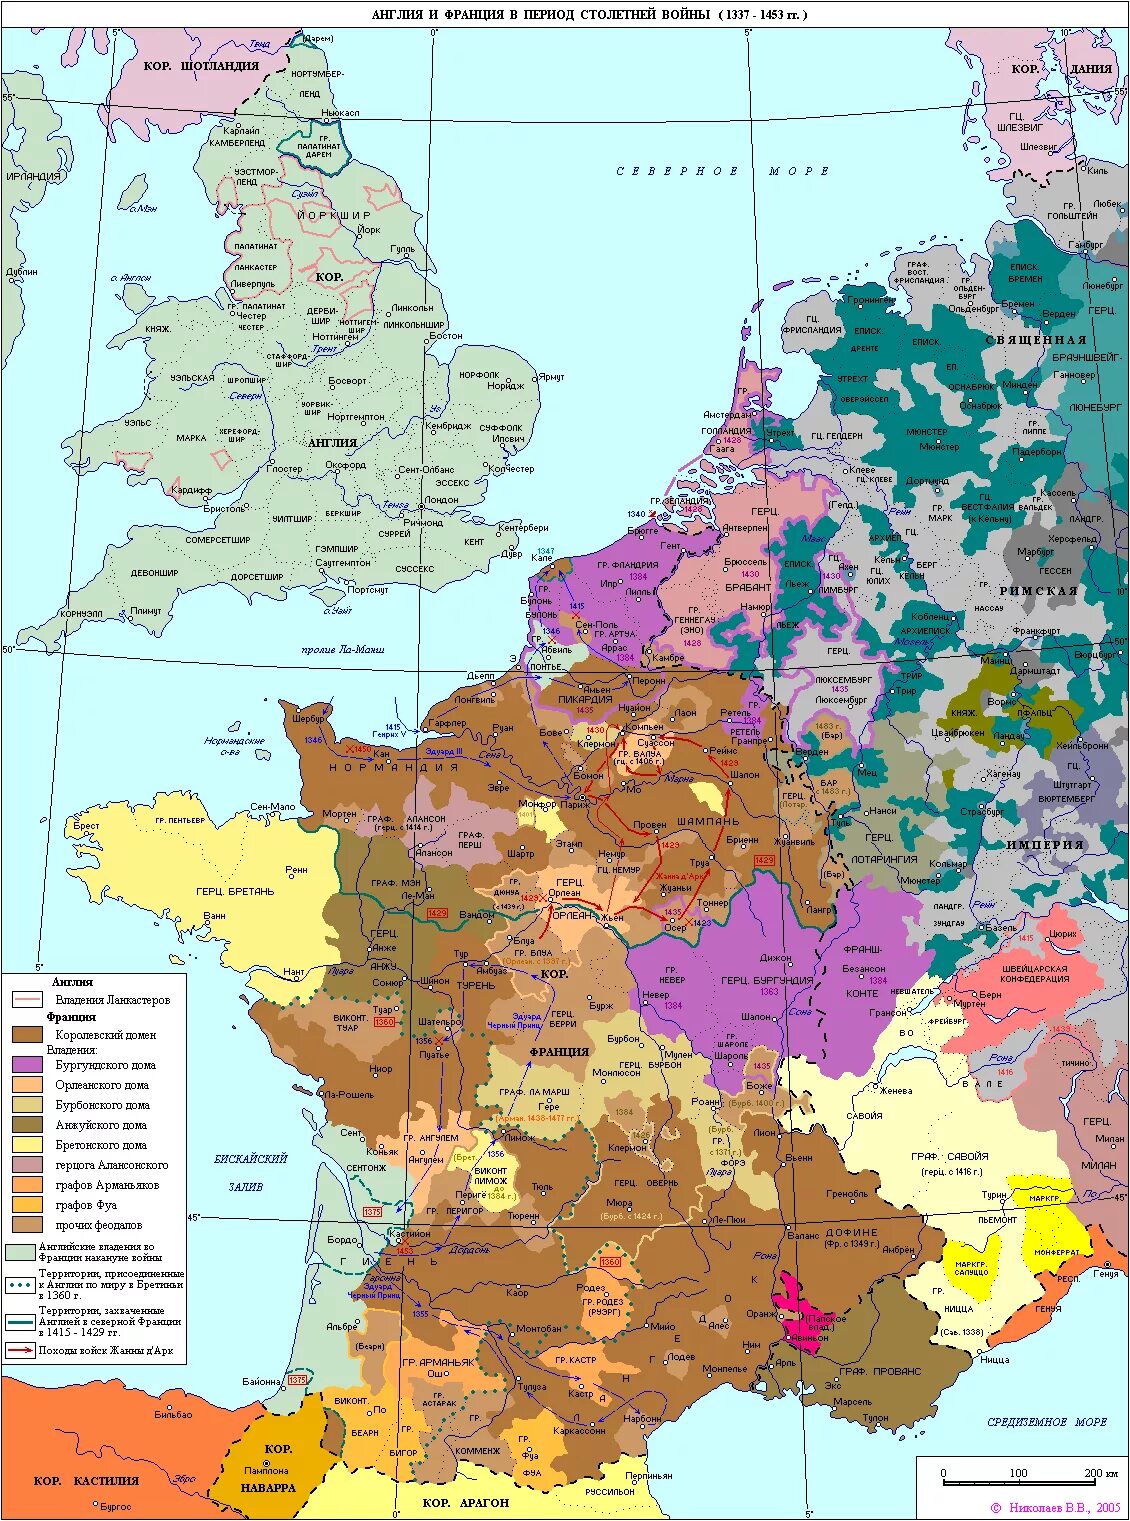 Франция 14 15 веков. Карта Франции 14 века. Франция и Англия в средневековье карта. Франция 14 век карта. Карта Франции 16 века.